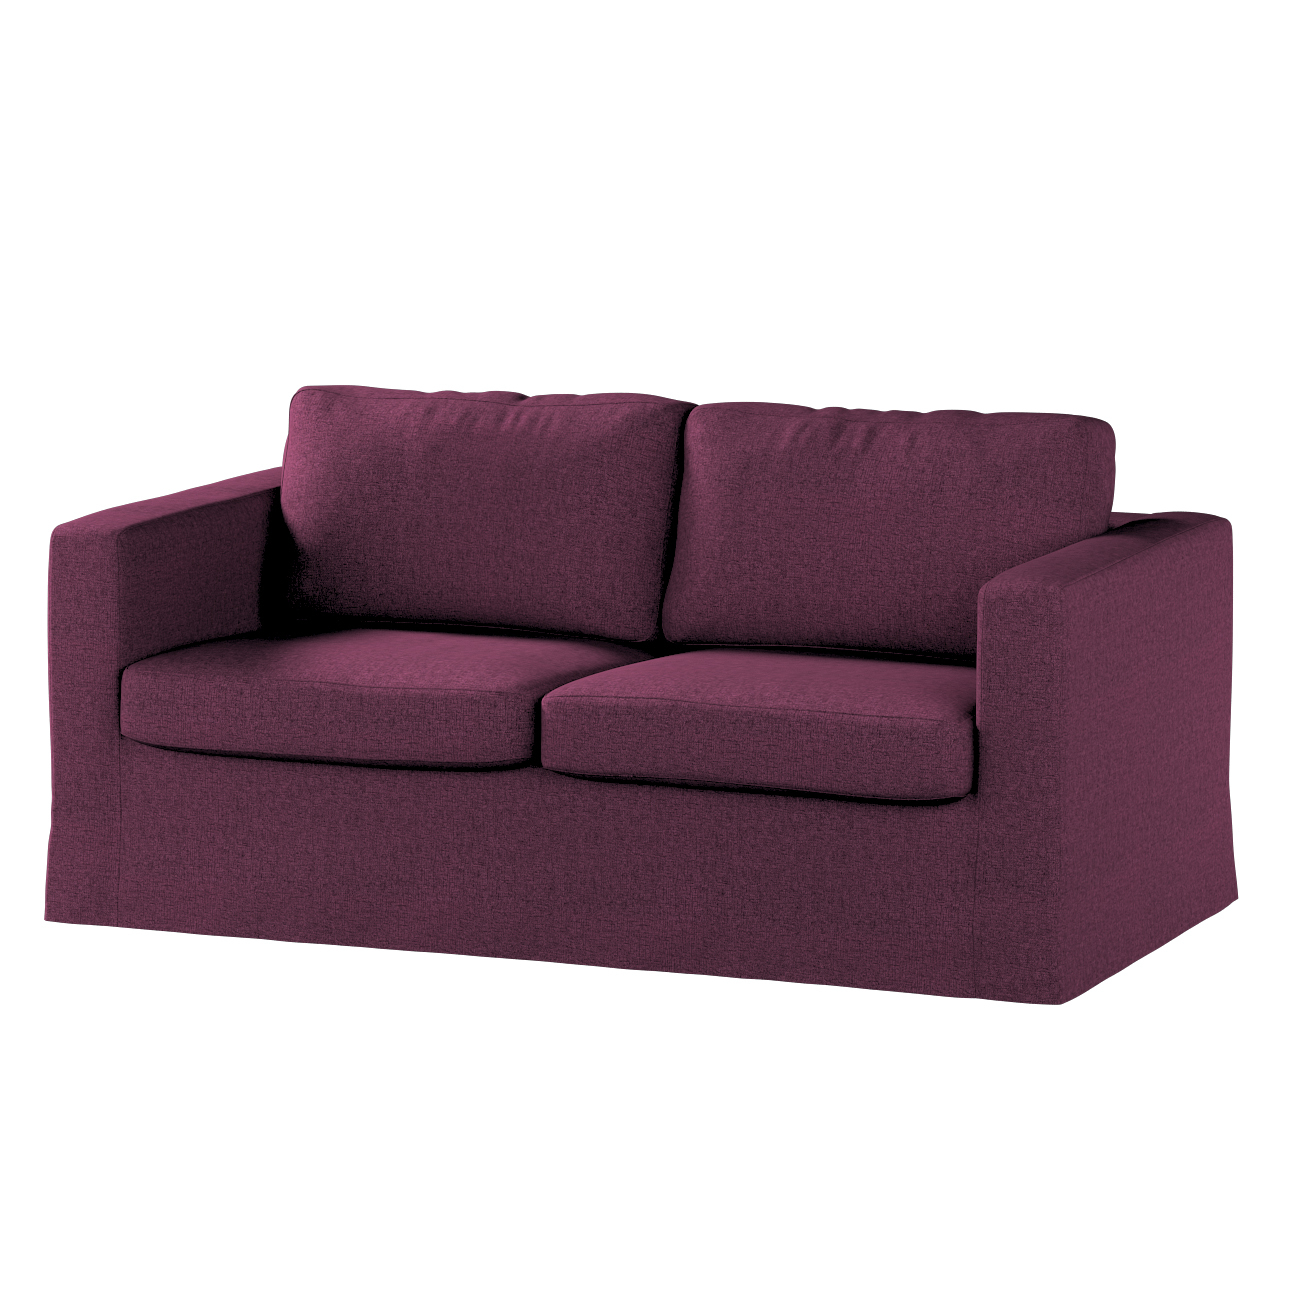 Bezug für Karlstad 2-Sitzer Sofa nicht ausklappbar, lang, pflaumenviolett, günstig online kaufen